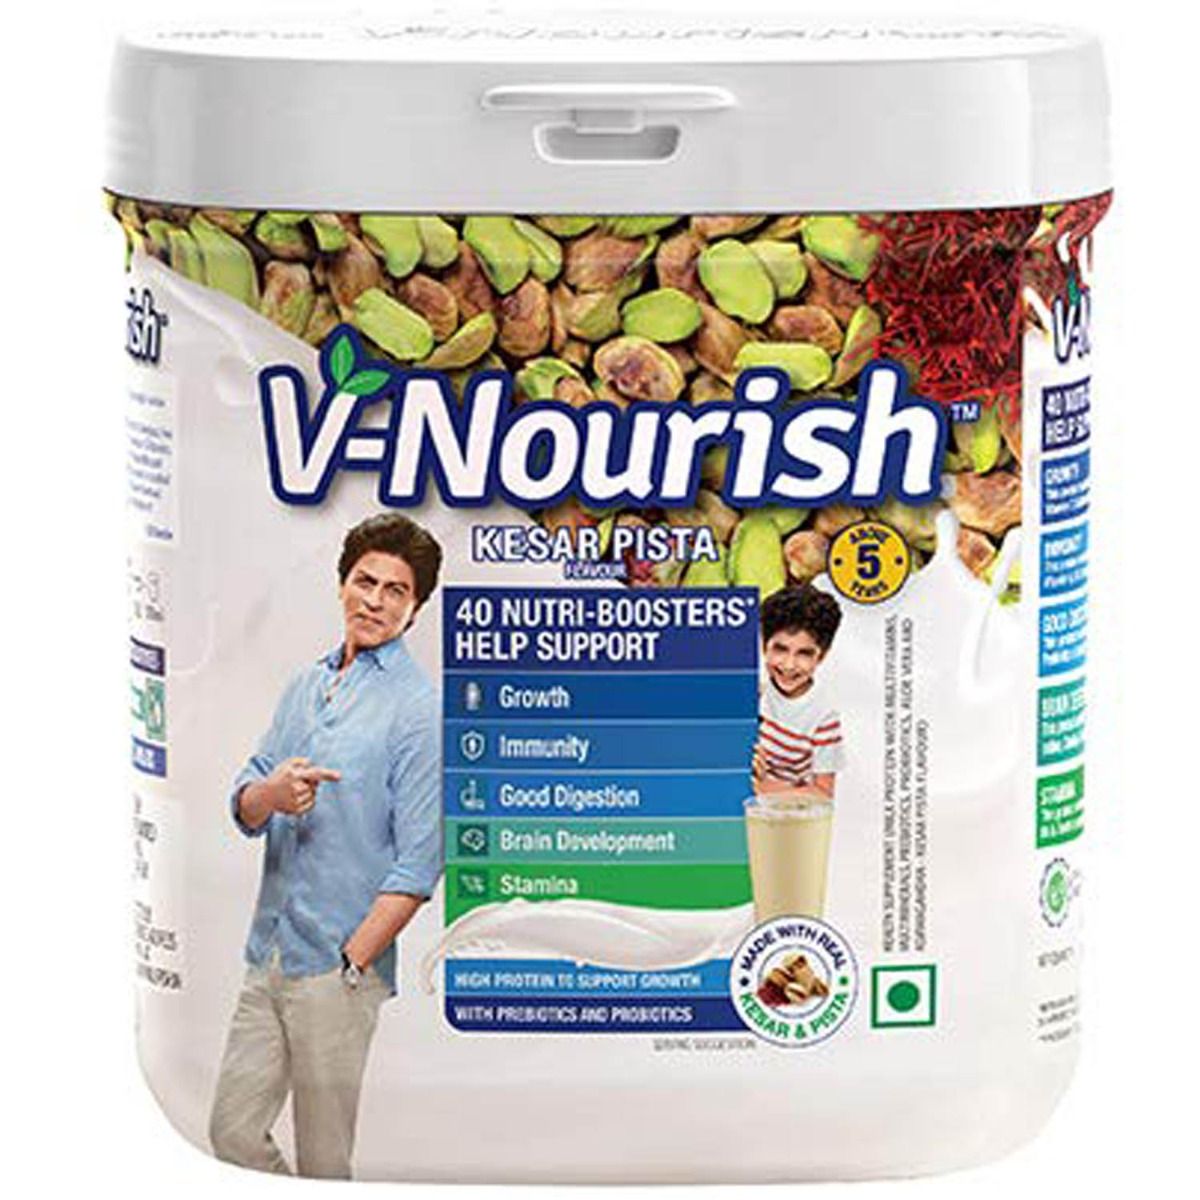 Buy V-Nourish Kesar Pista Flavoured Kids Nutrition Drink, 200 gm Jar Online